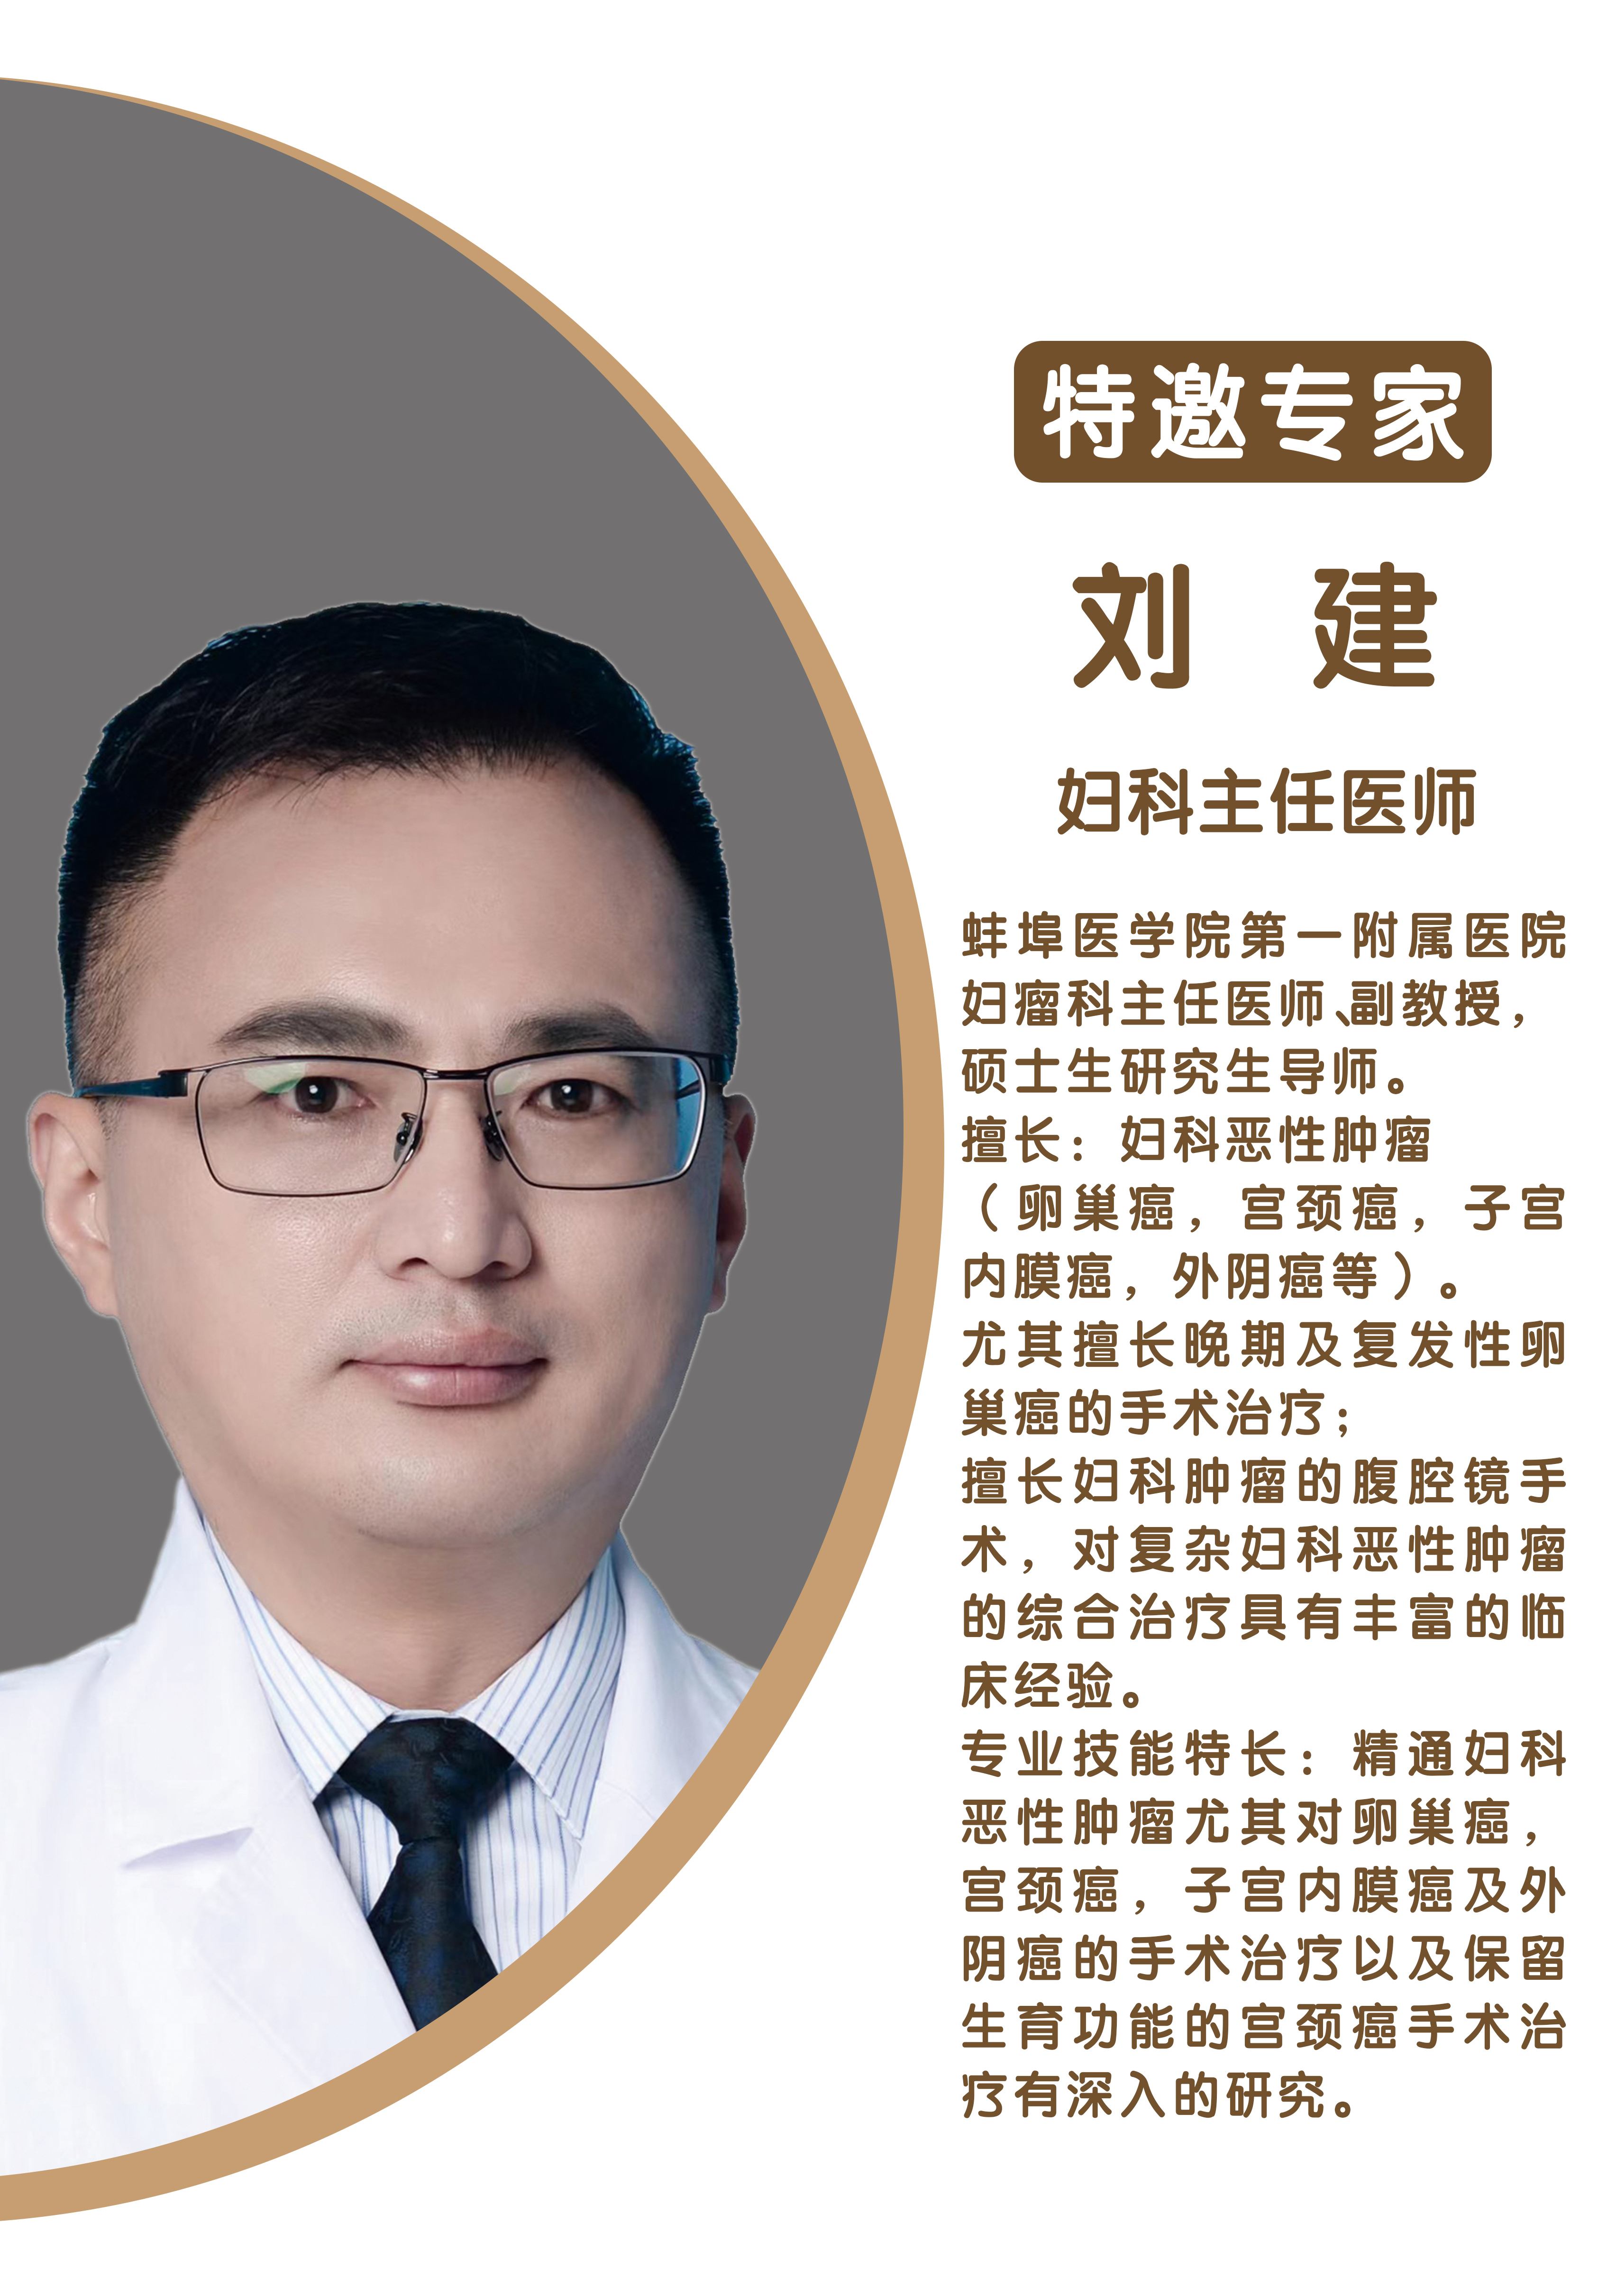 劉健 蛙埠醫學院第一附屬醫院婦科主任醫師、副教授